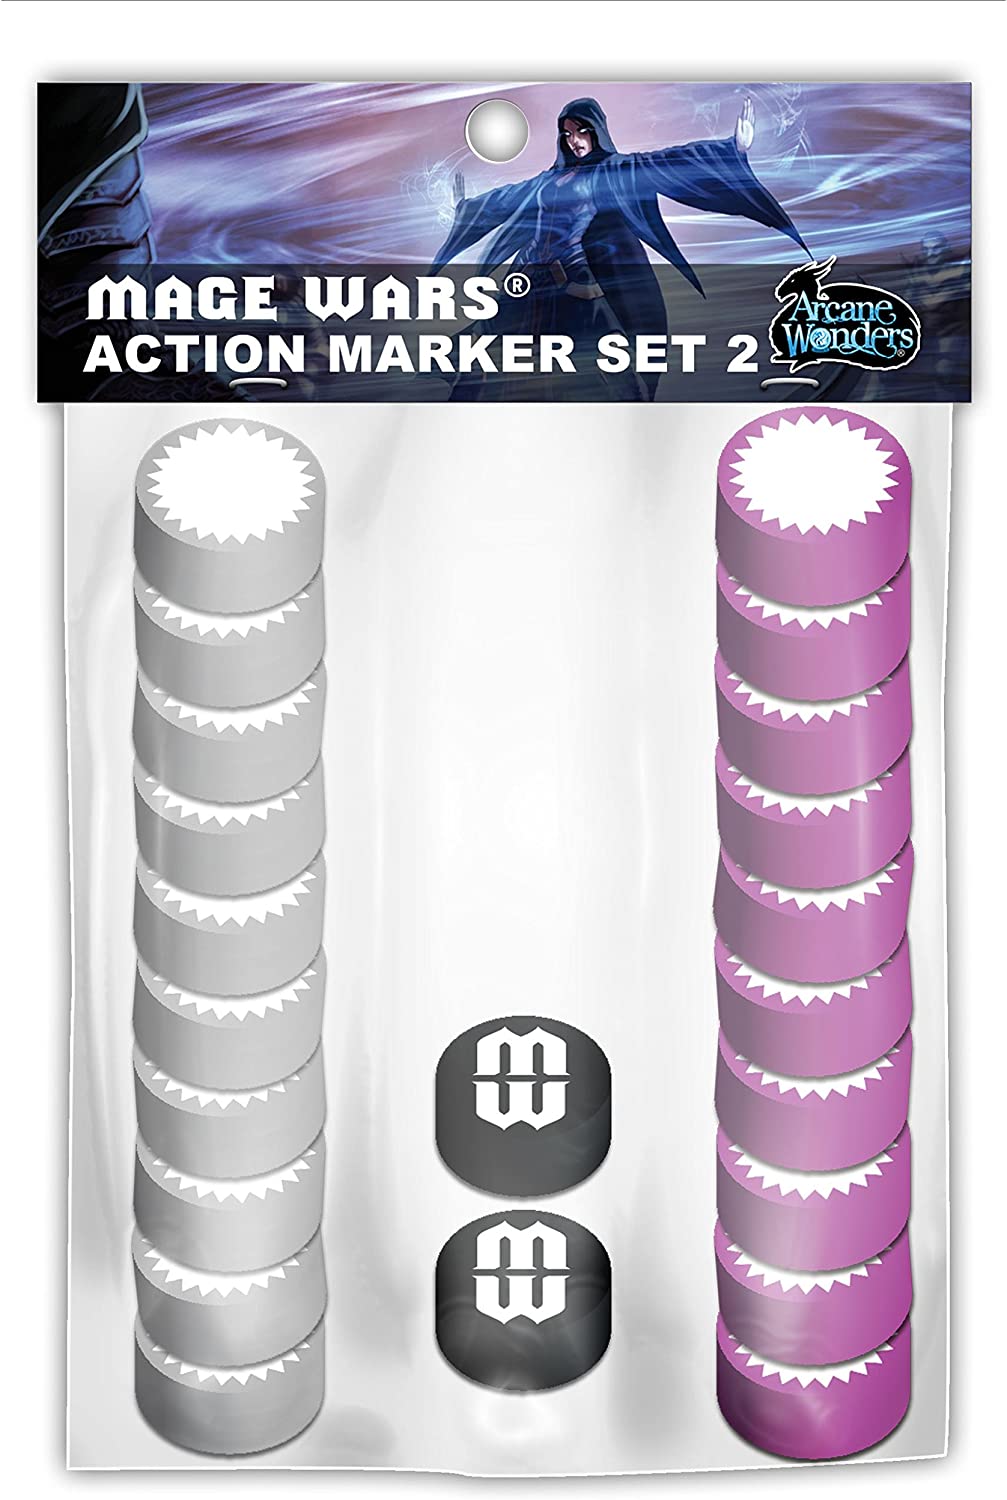 Arcane Wonders Brettspiel „Mage Wars Action Marker Set 2“.